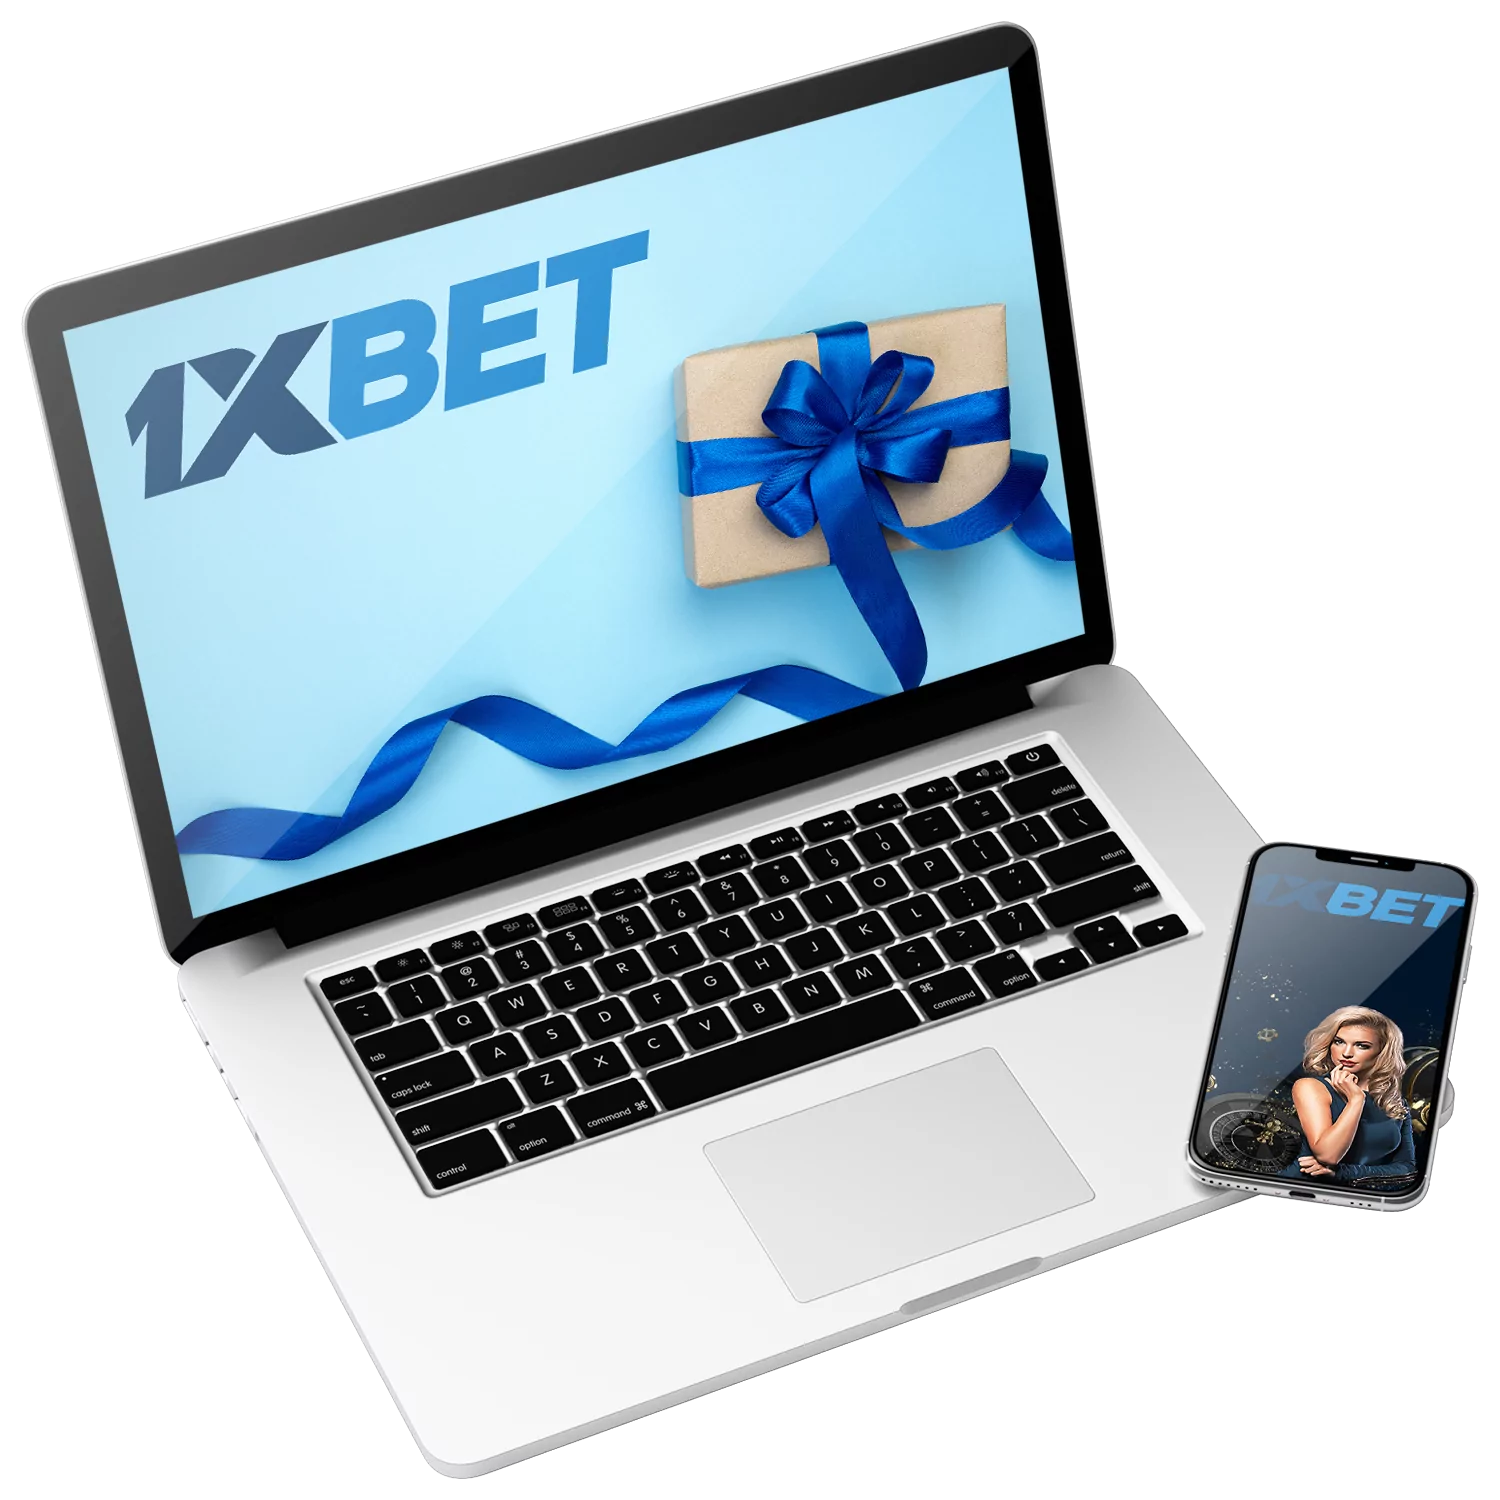 1xBet भारत के उपयोगकर्ताओं के लिए कई बोनस प्रदान करता है।